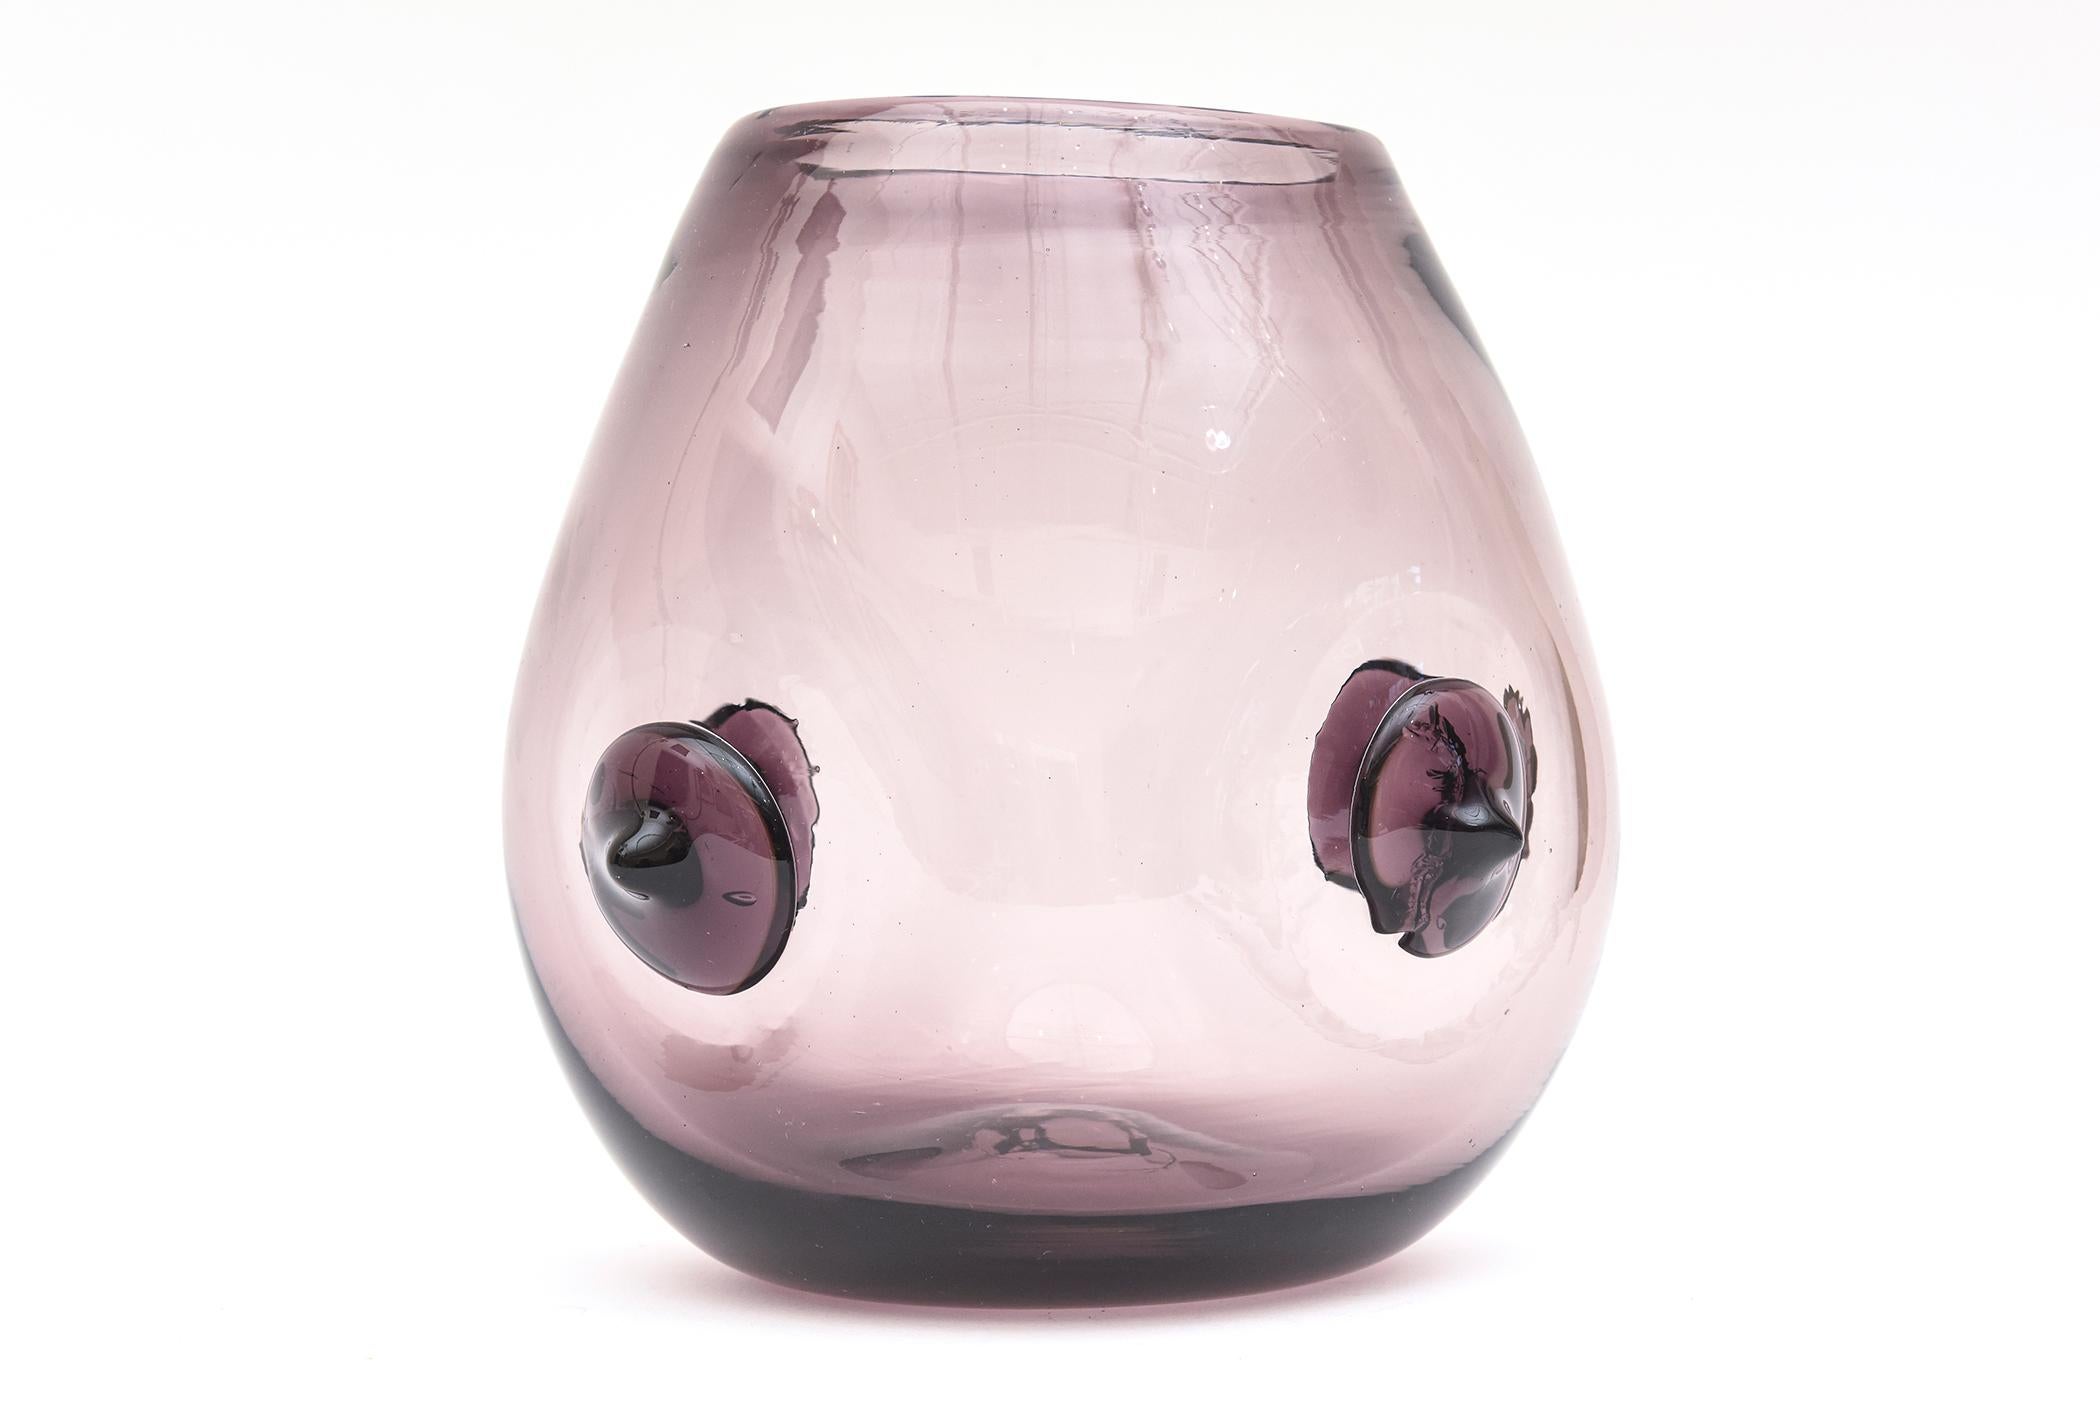 blenko purple vase